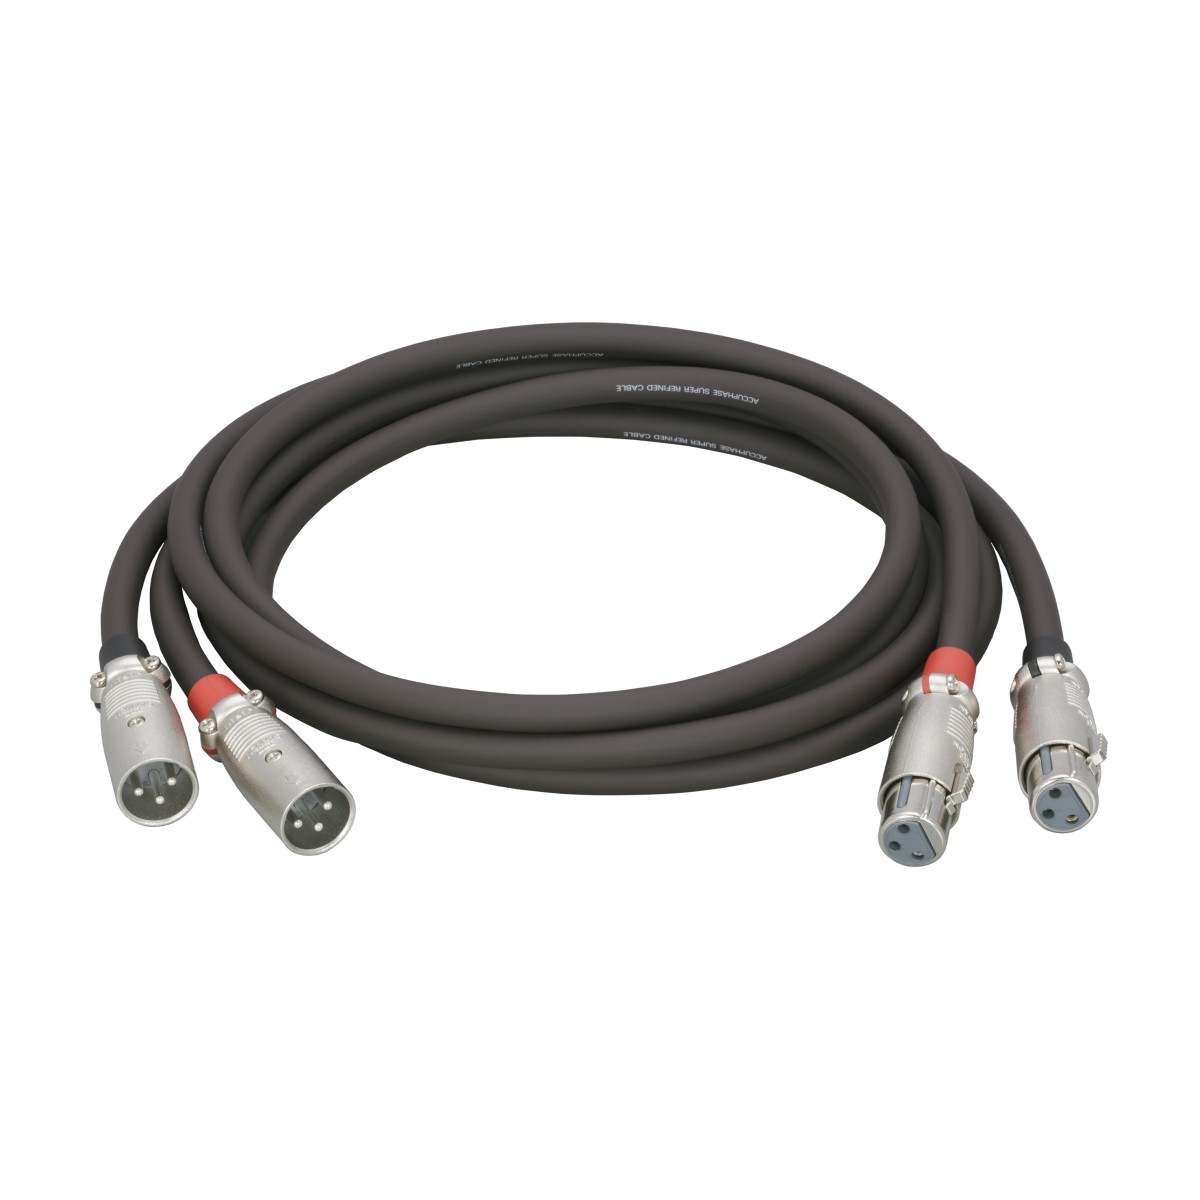 Hier sehen Sie den Artikel ASLC-10B Audio Cable XLR 1m aus der Kategorie Accessories Accuphase. Dieser Artikel ist erhältlich bei cebrands.ch